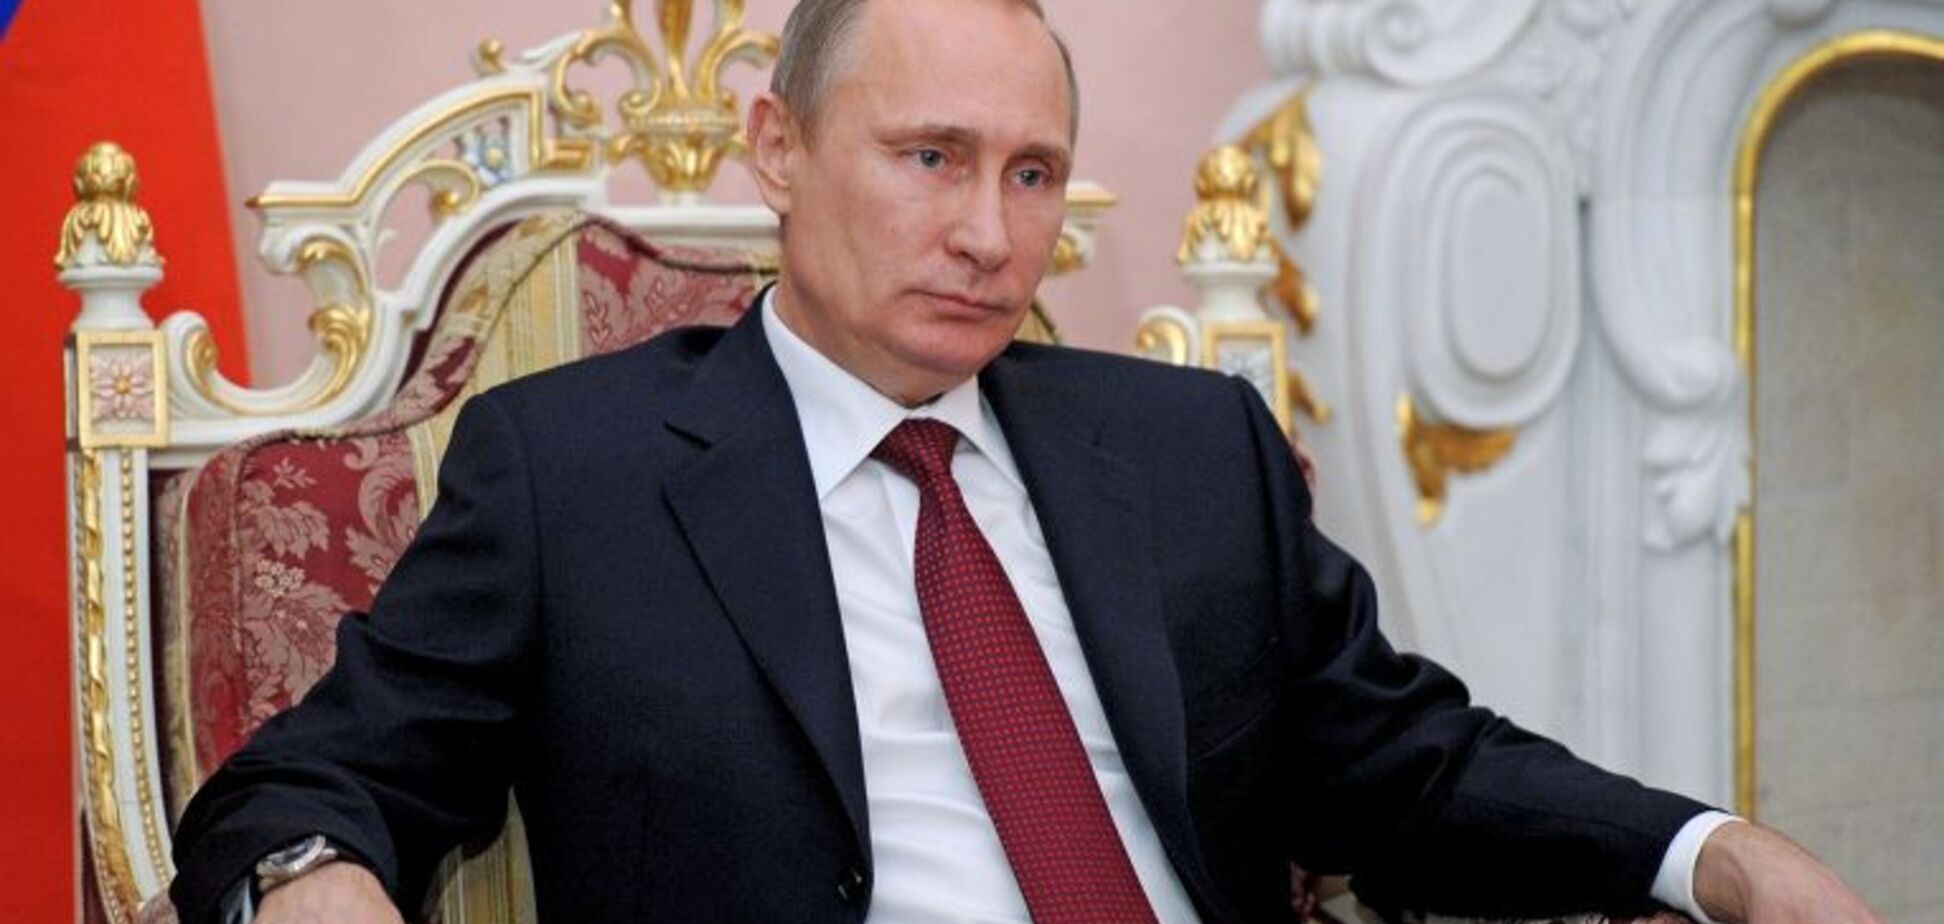 Его не свергнут – он уйдет сам: в России спрогнозировали судьбу Путина